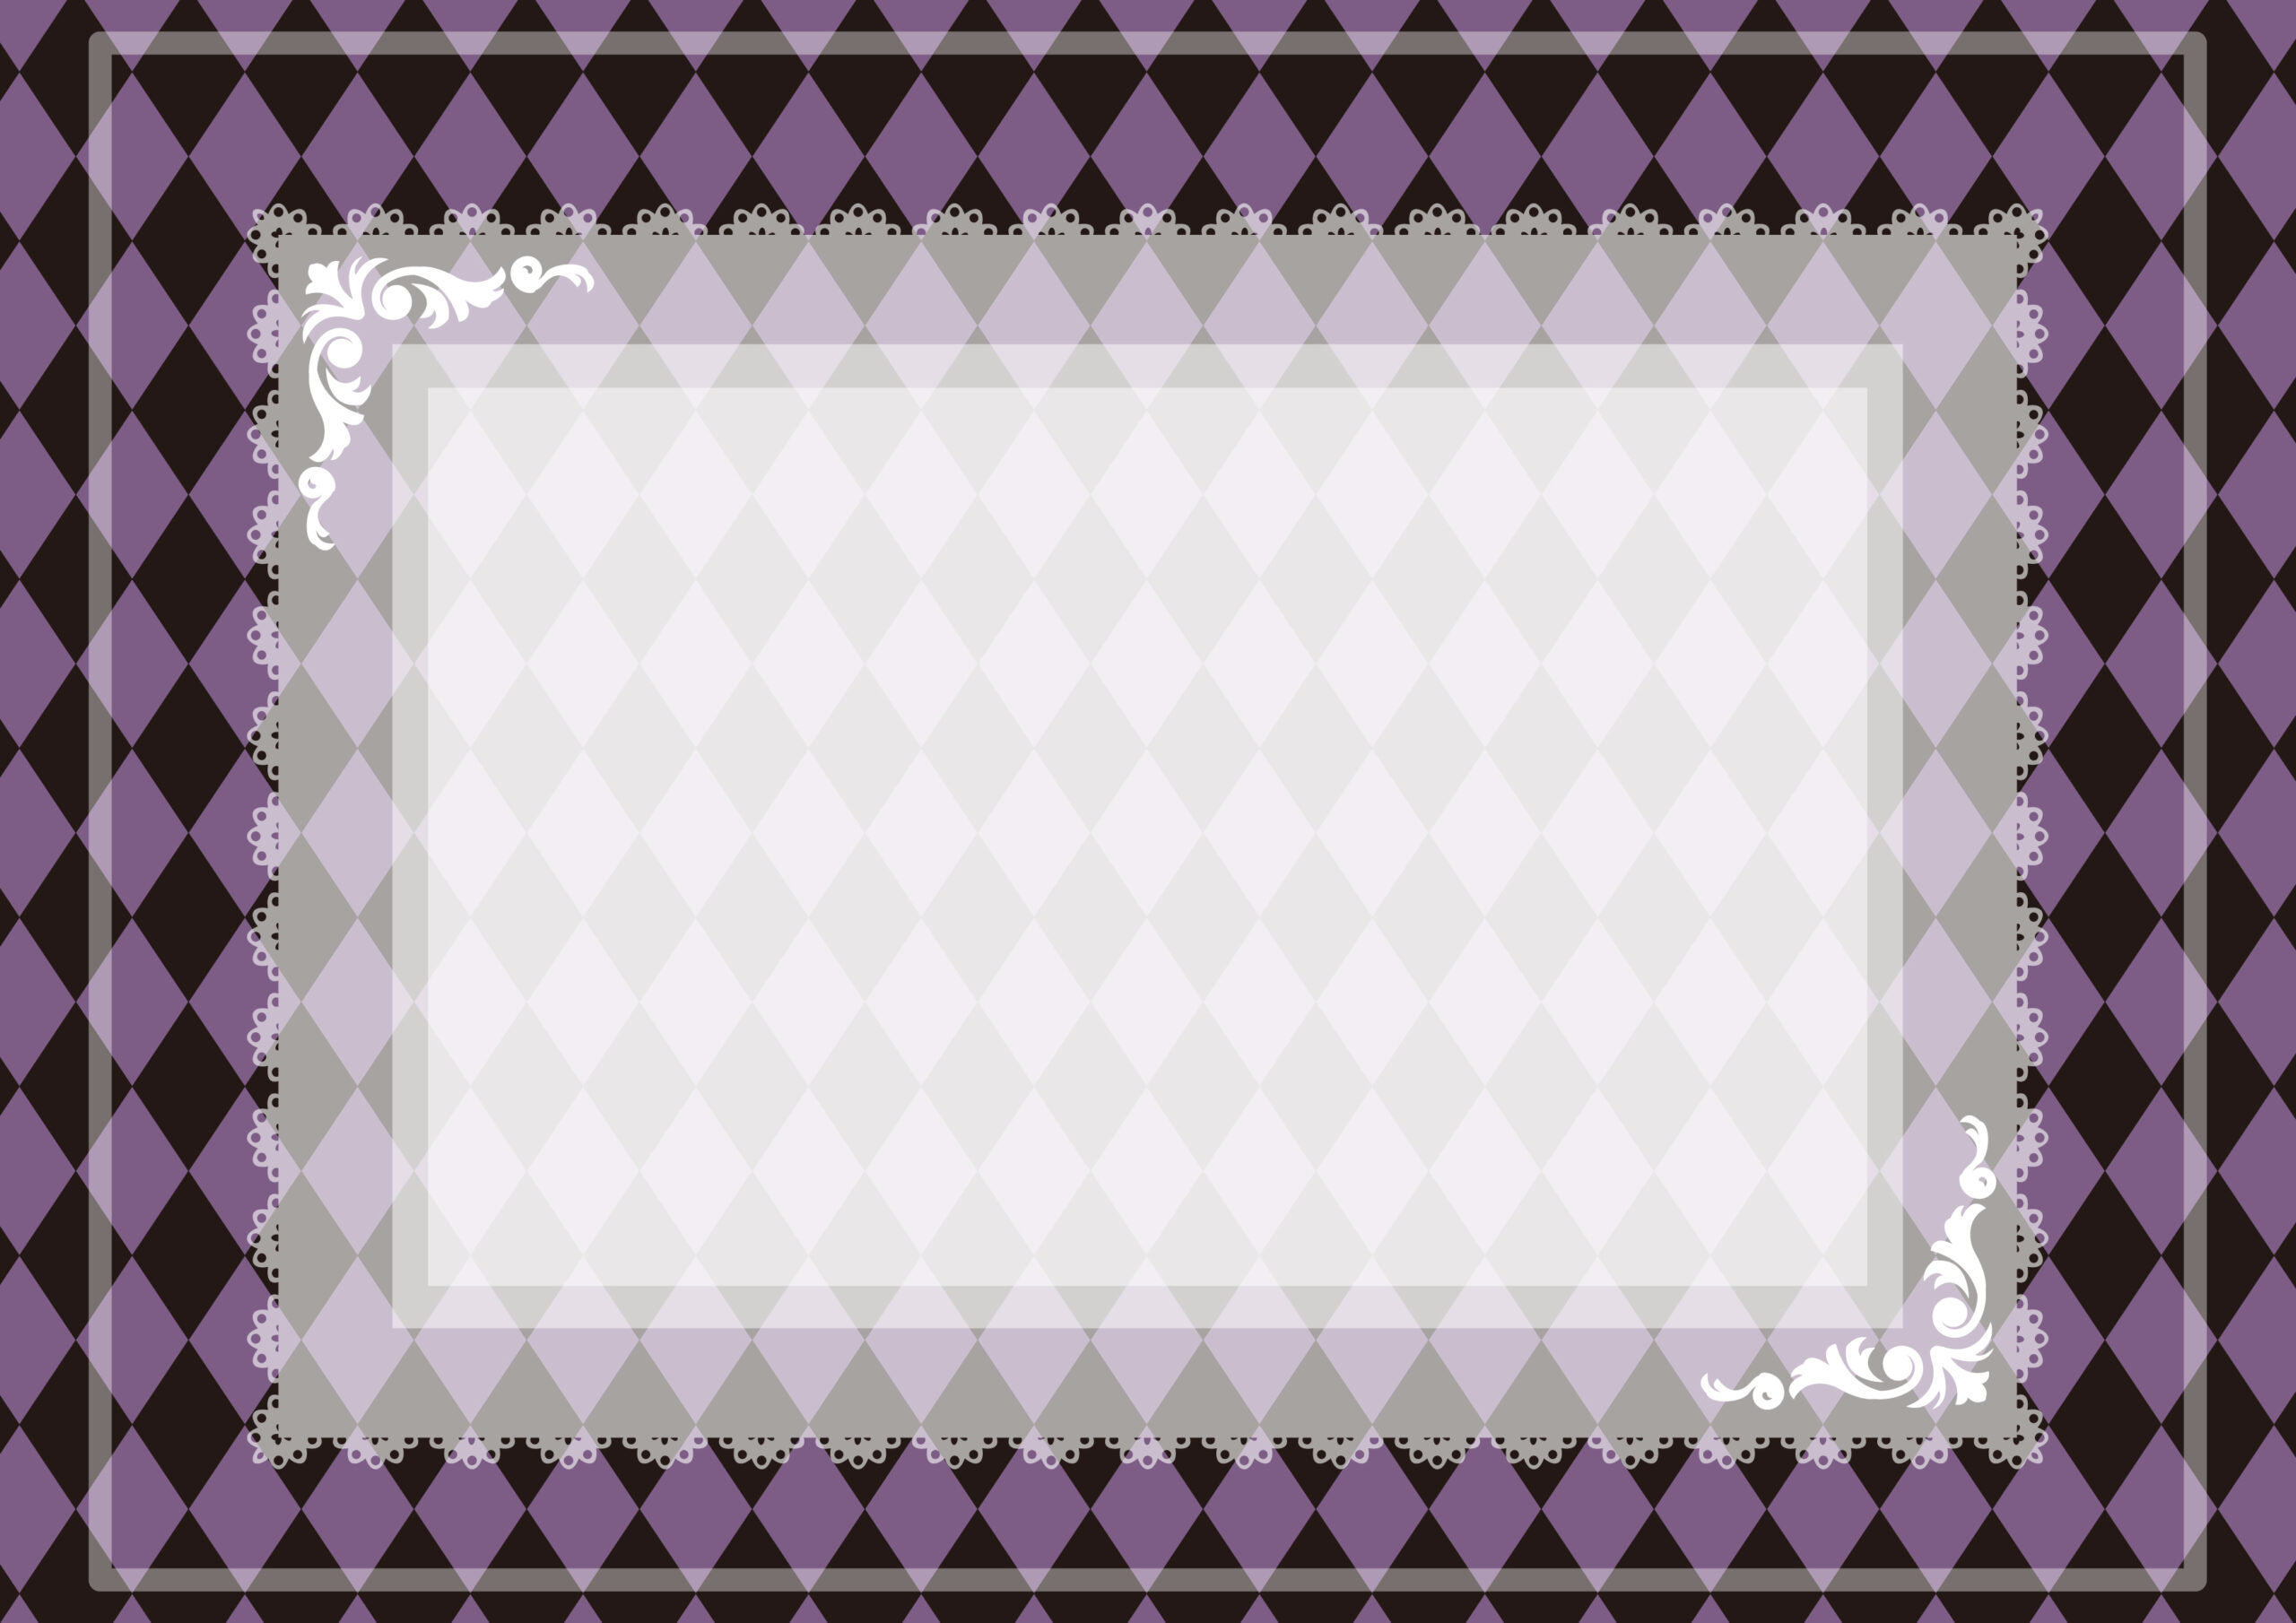 紫カラーのおしゃれなダイヤ柄背景・レースの飾り枠のフレーム素材になります。動画の背景や壁紙、ブログのサムネイルなどにご使用可能となり、張り紙などの用途で印刷利用でもかわいい素材となっております。ダウンロード：JPGA4サイズで印